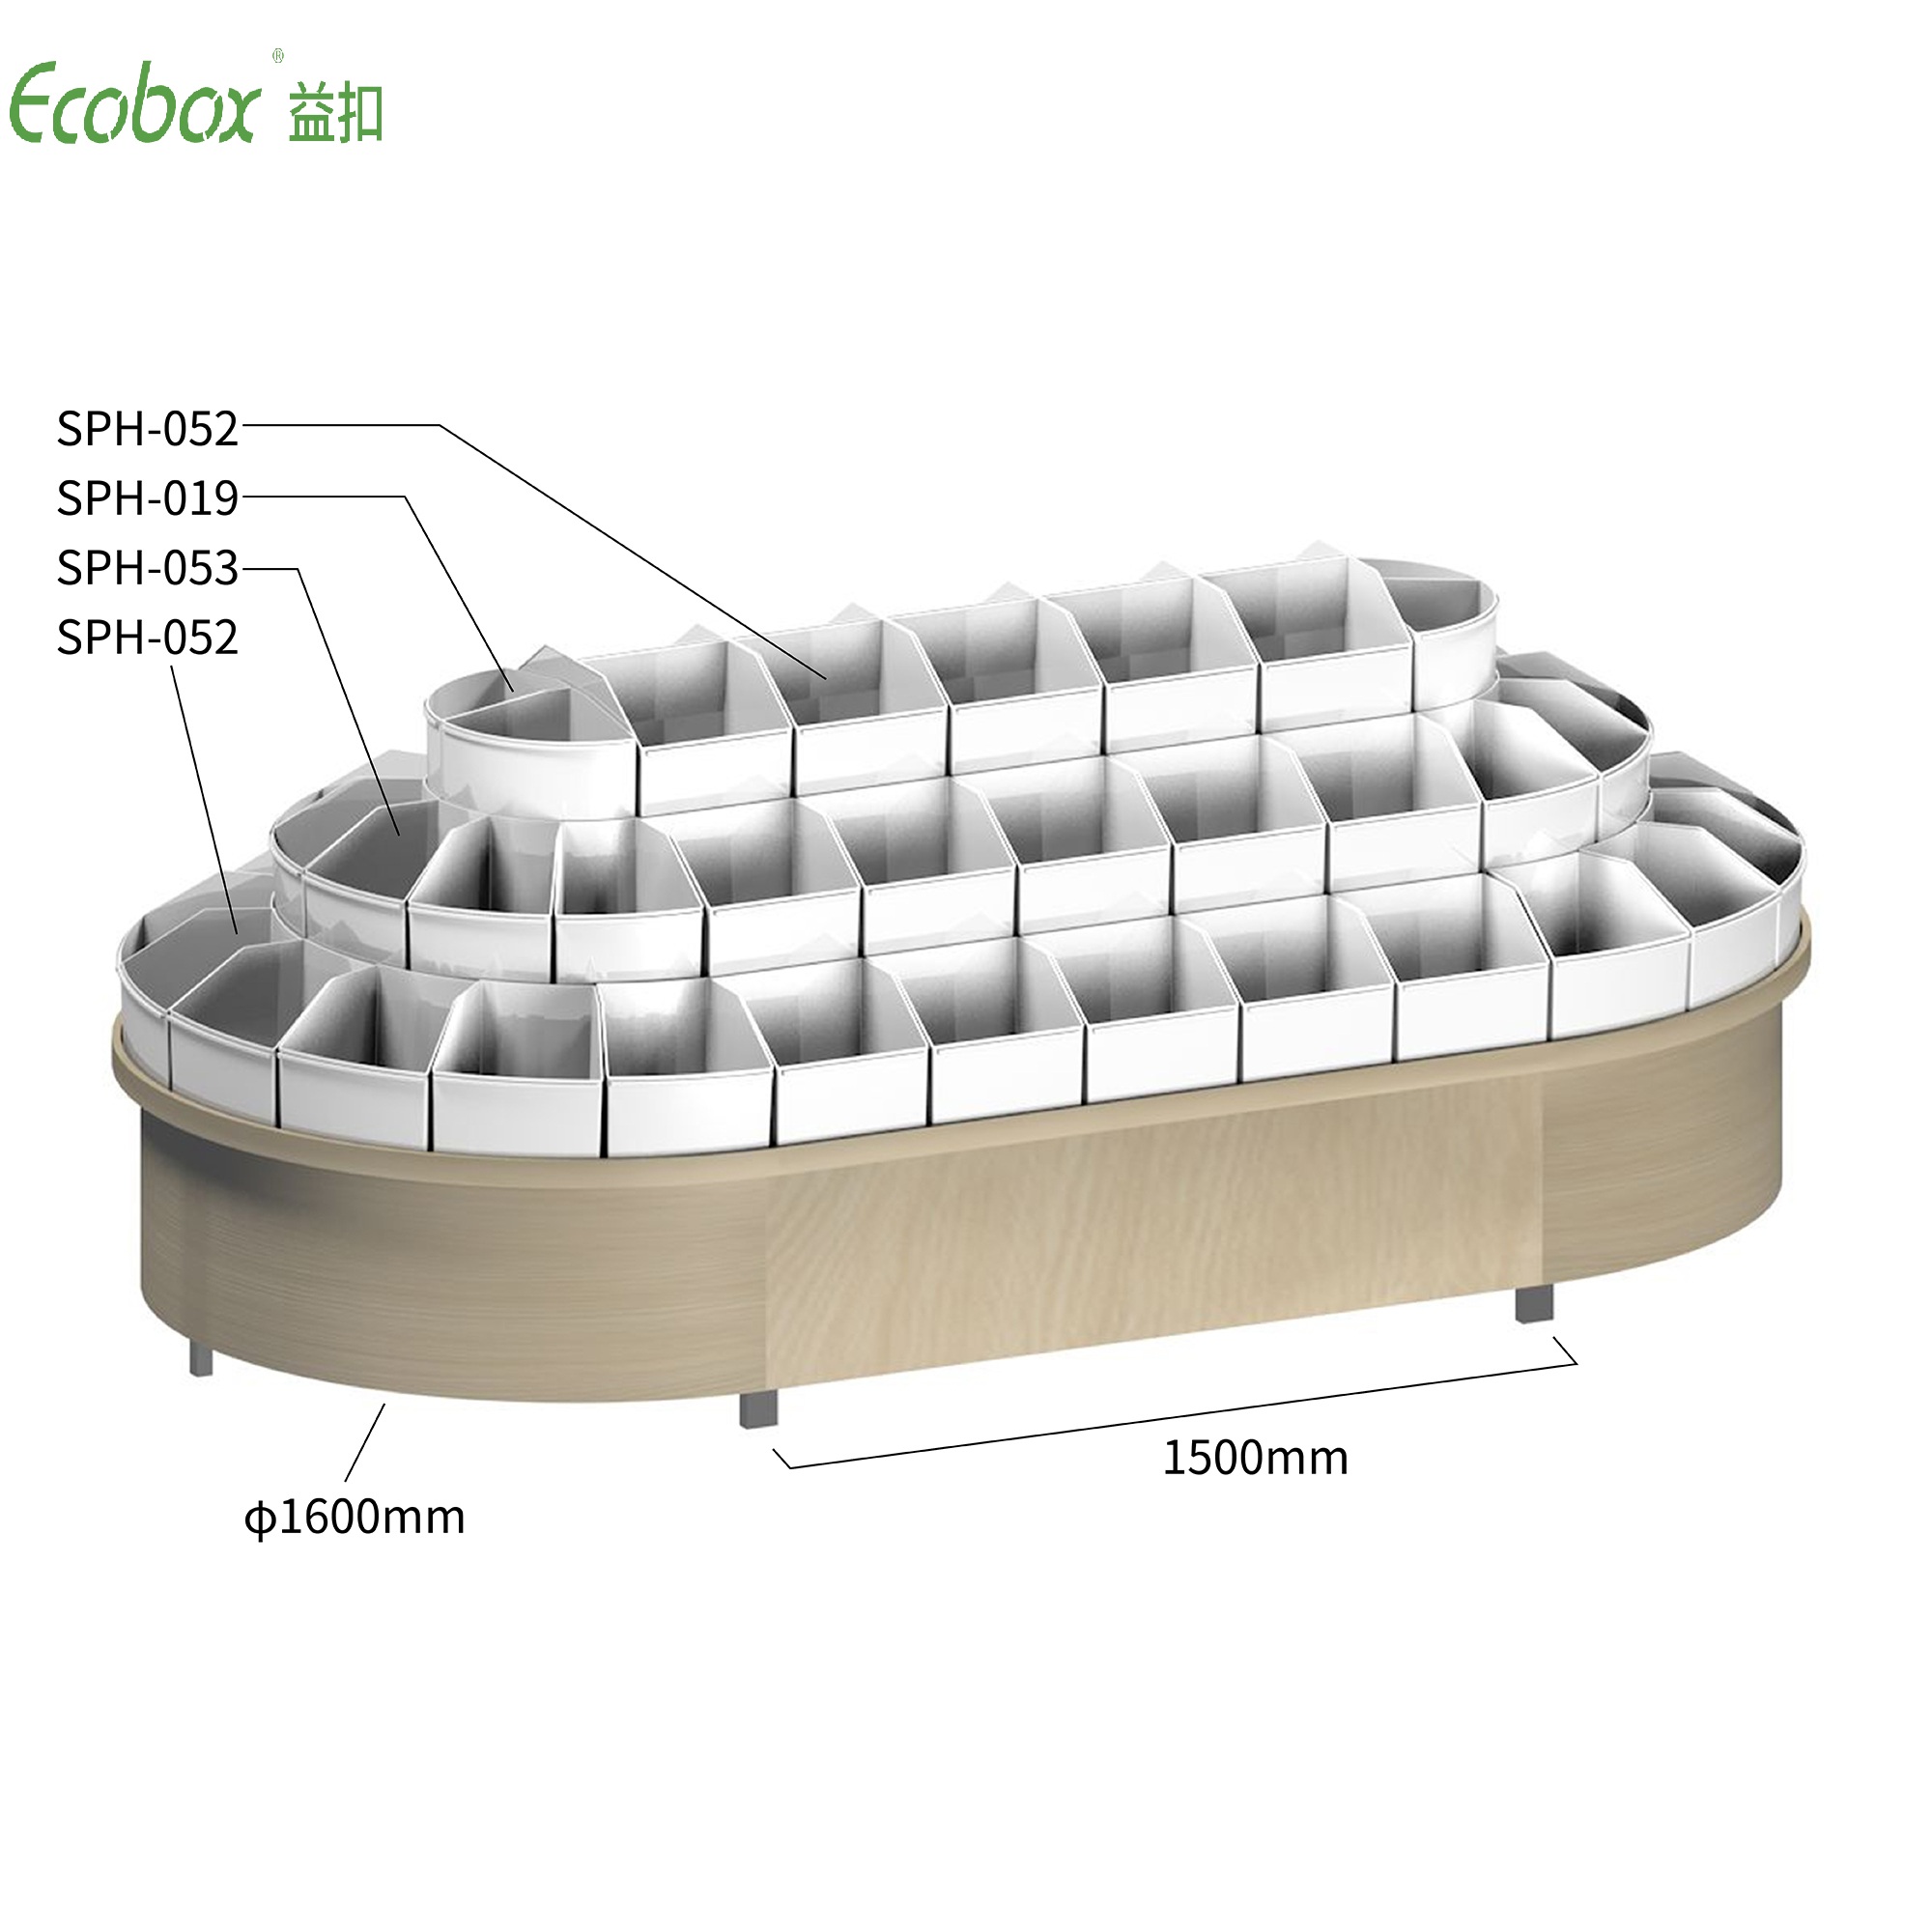 Rundes Regal der Ecobox G003-Serie mit Ecobox-Großbehältern für Supermarkt-Großlebensmitteldisplays